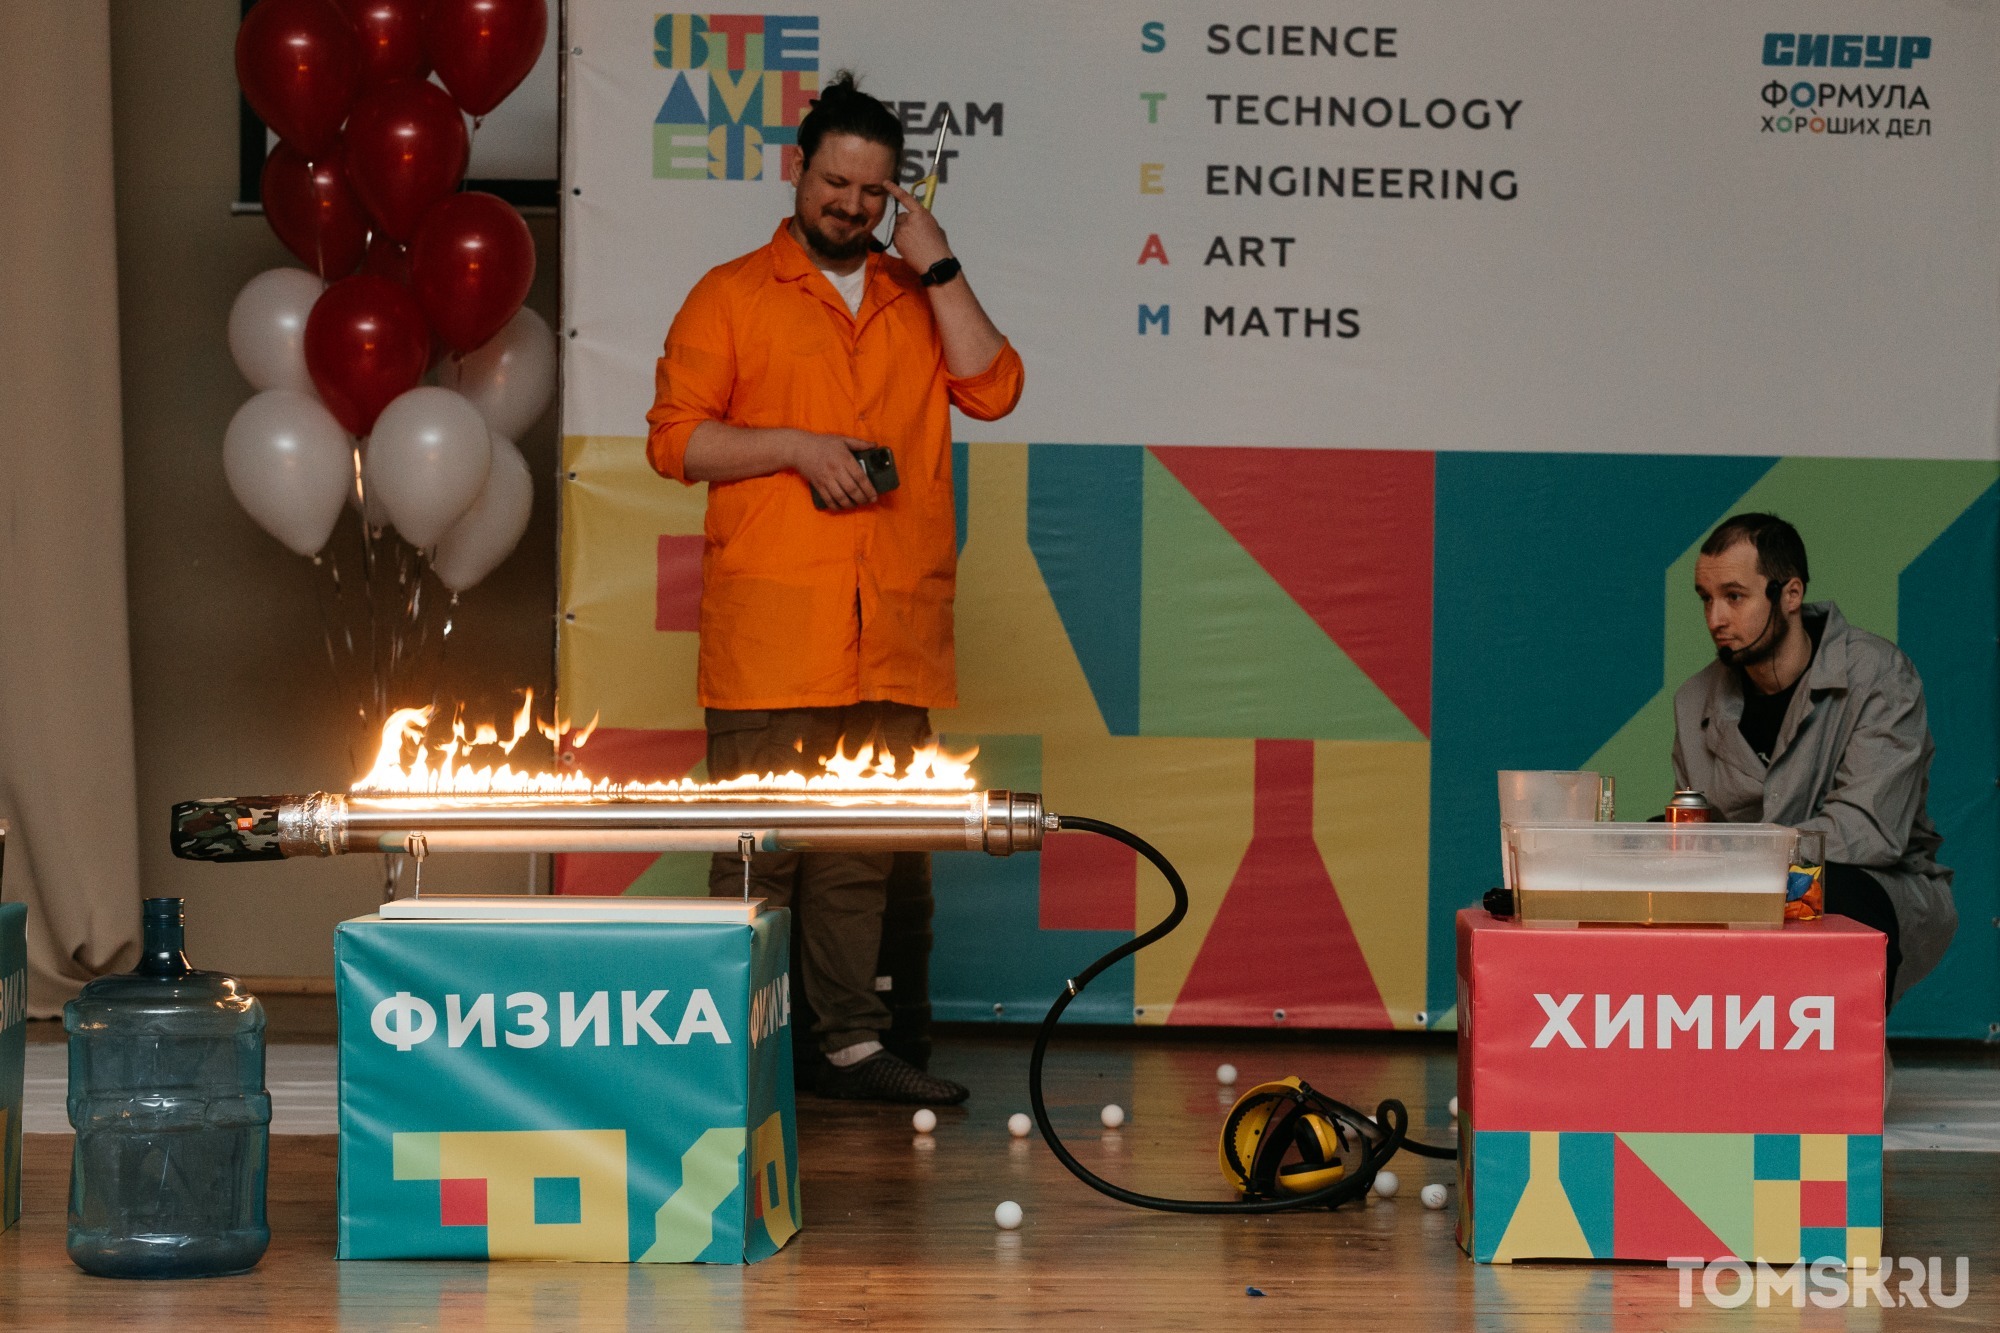 Образовательный фестиваль для школьников стартовал сегодня в Томске